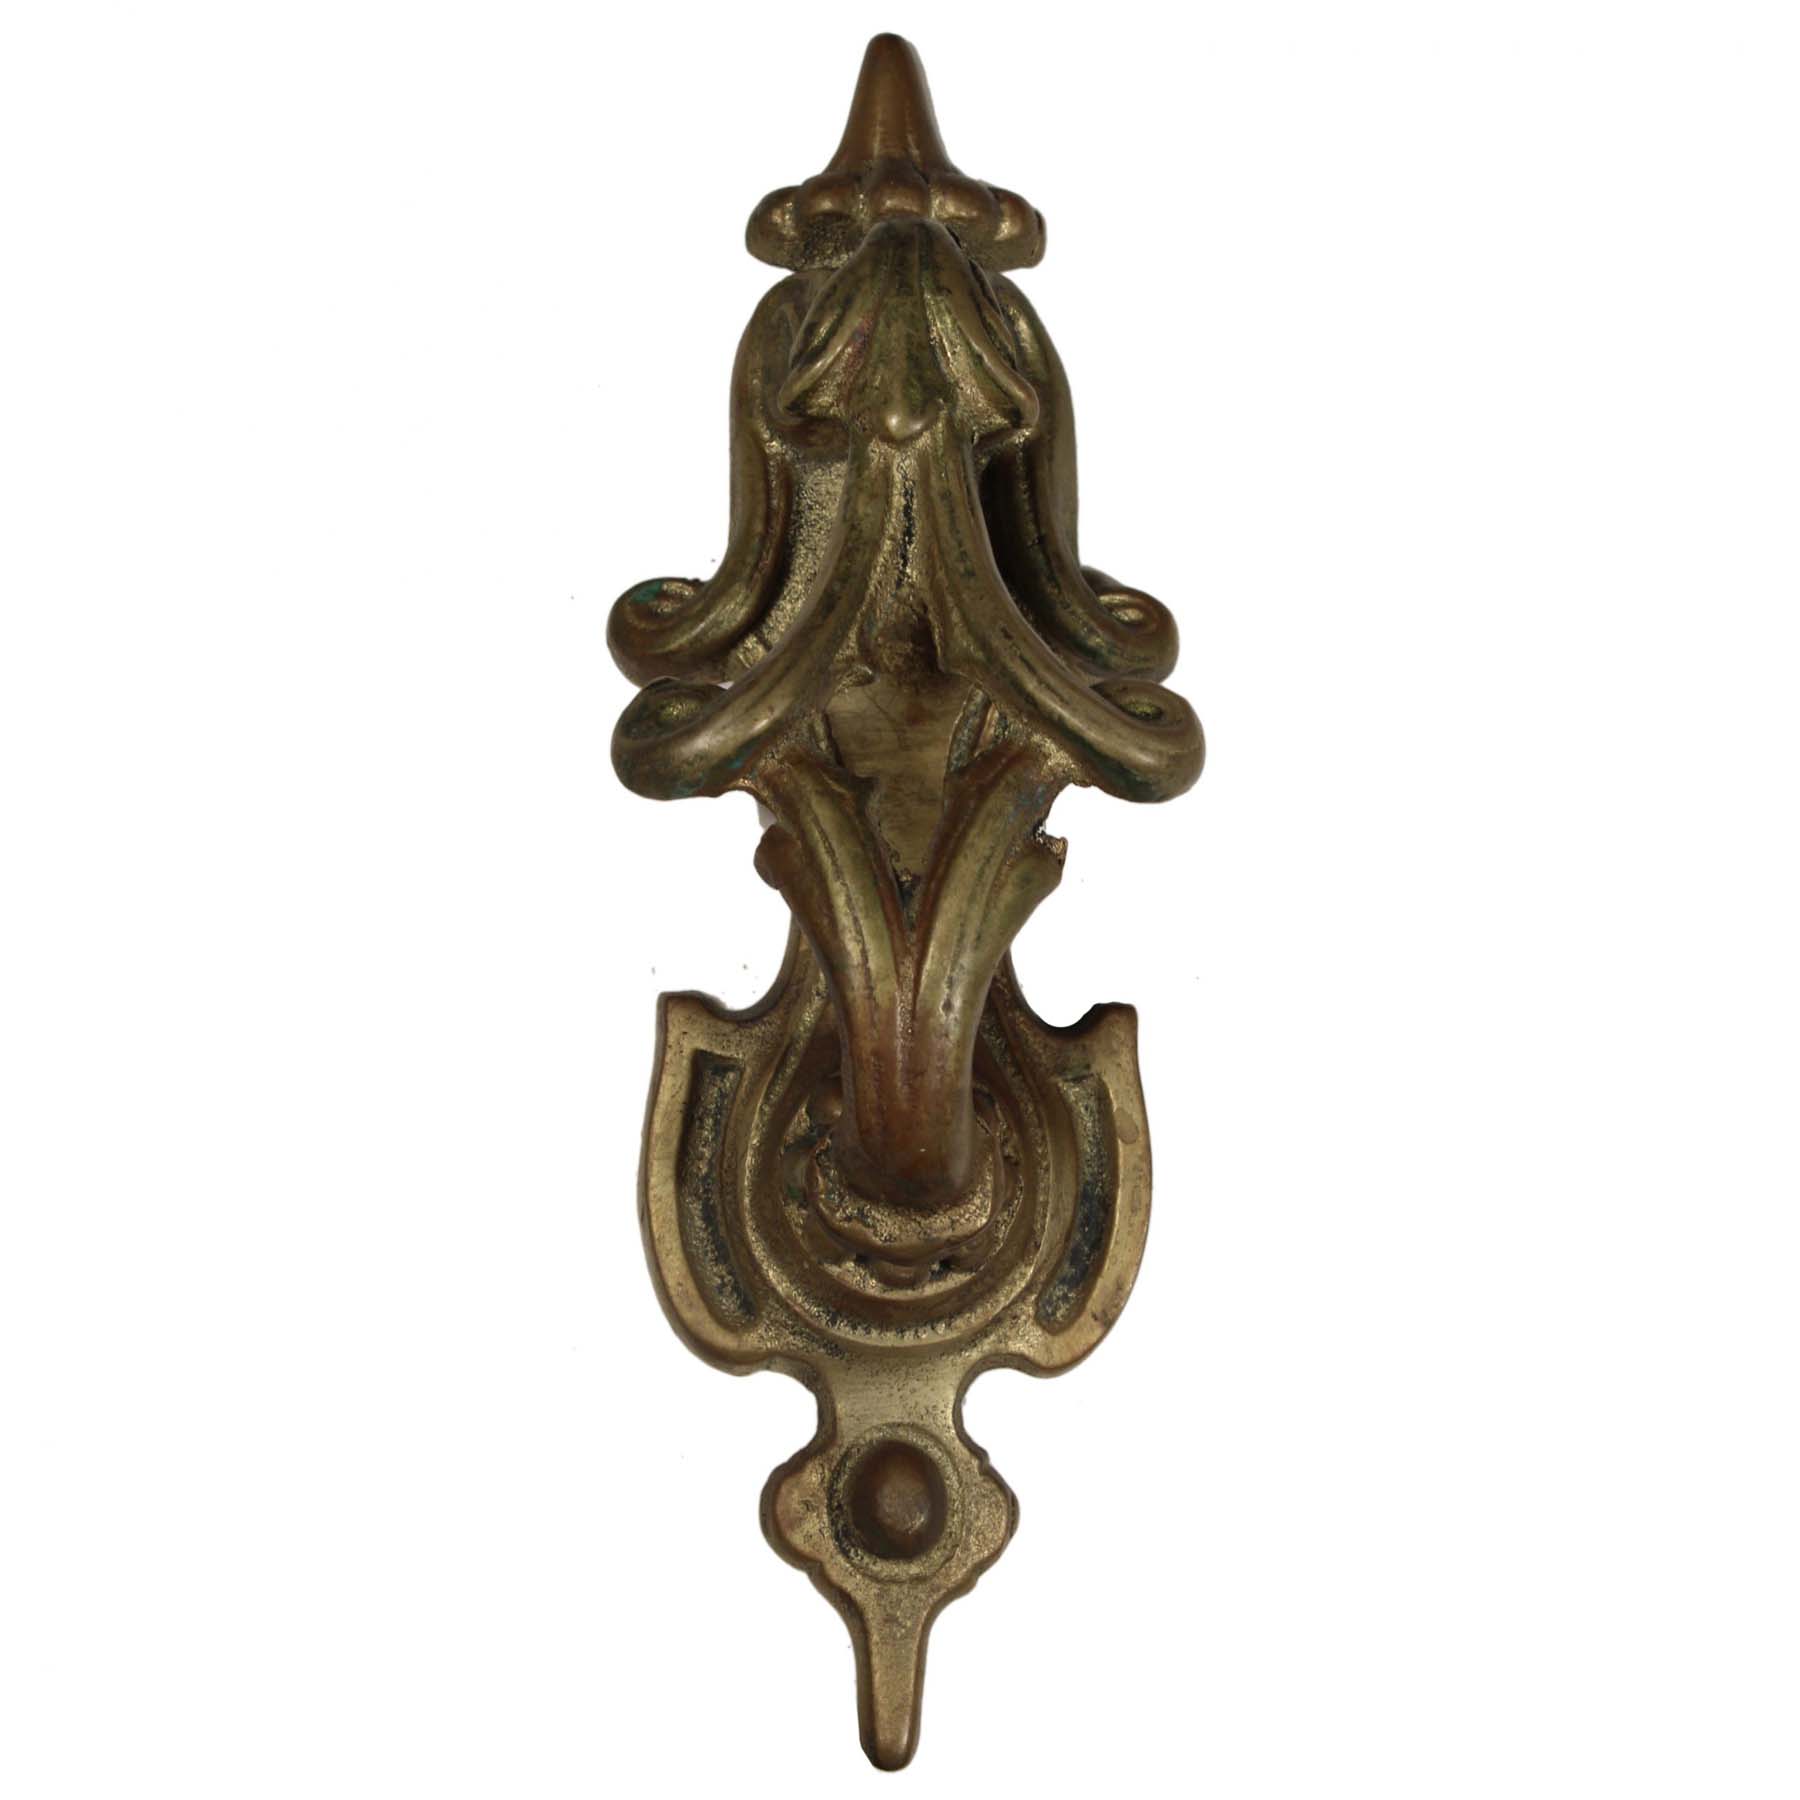 SOLD Vintage Cast Brass Door Knocker, Art Nouveau -69882